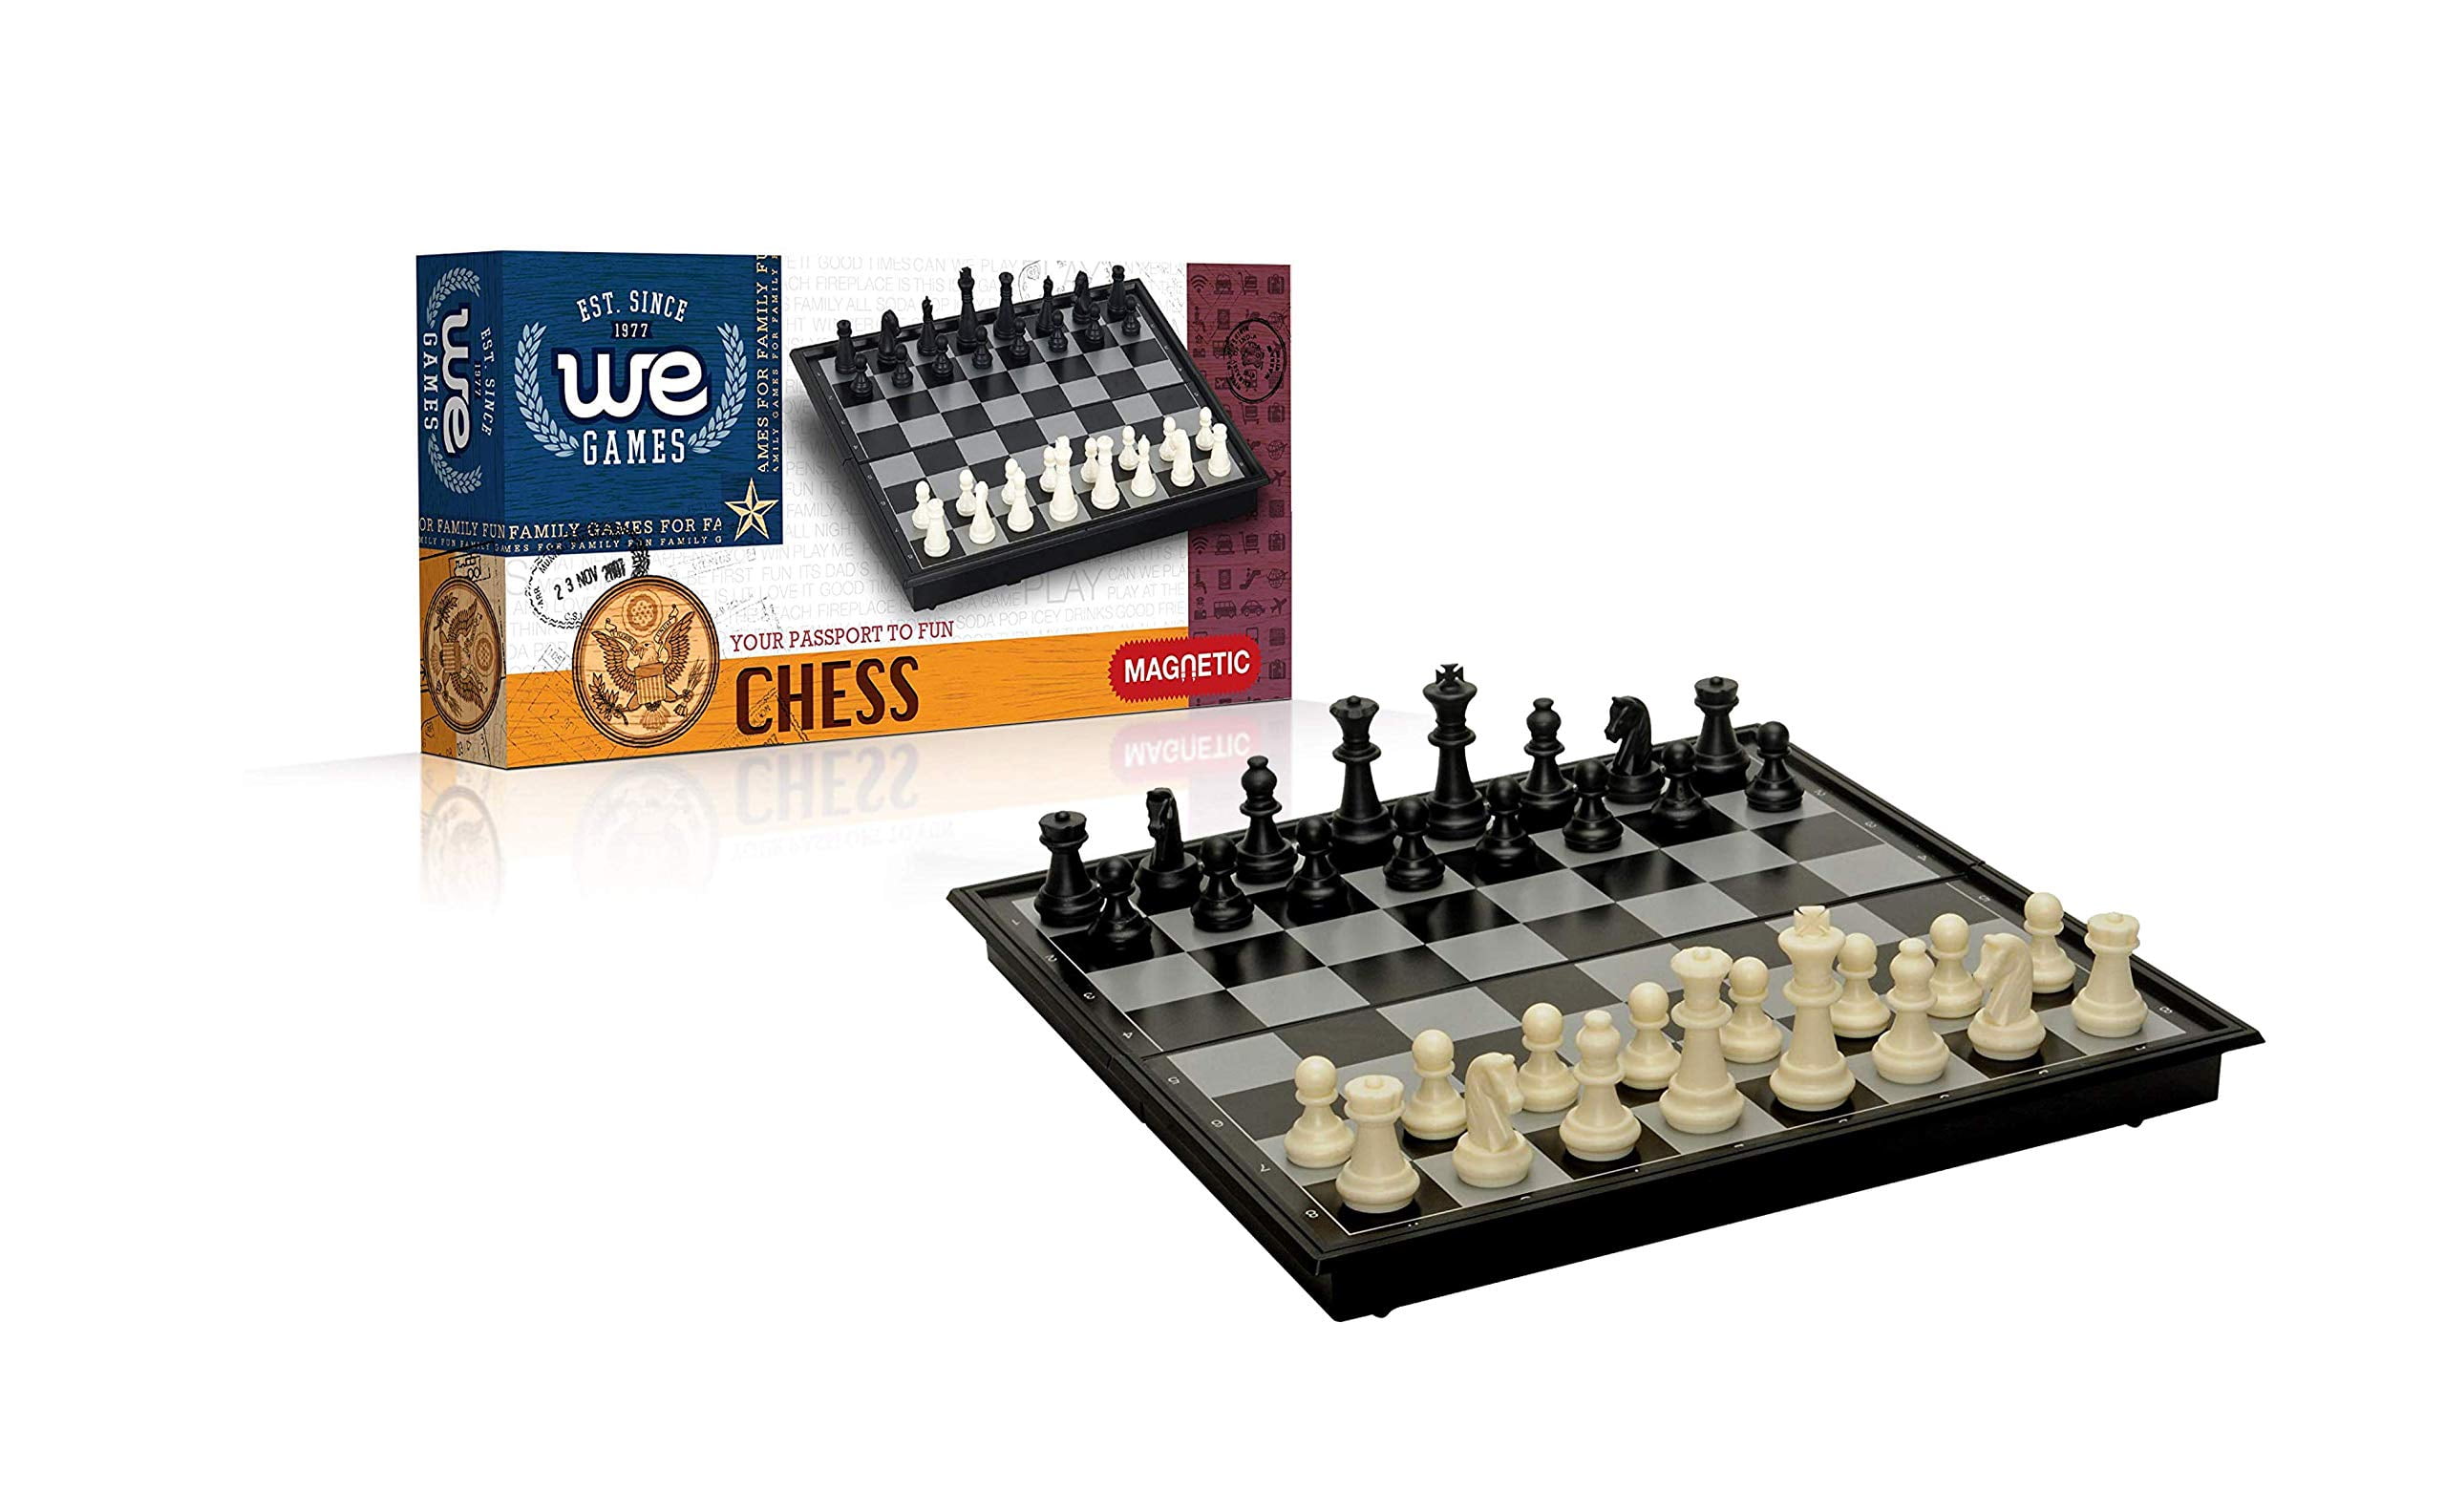 Chesskid.com Pin